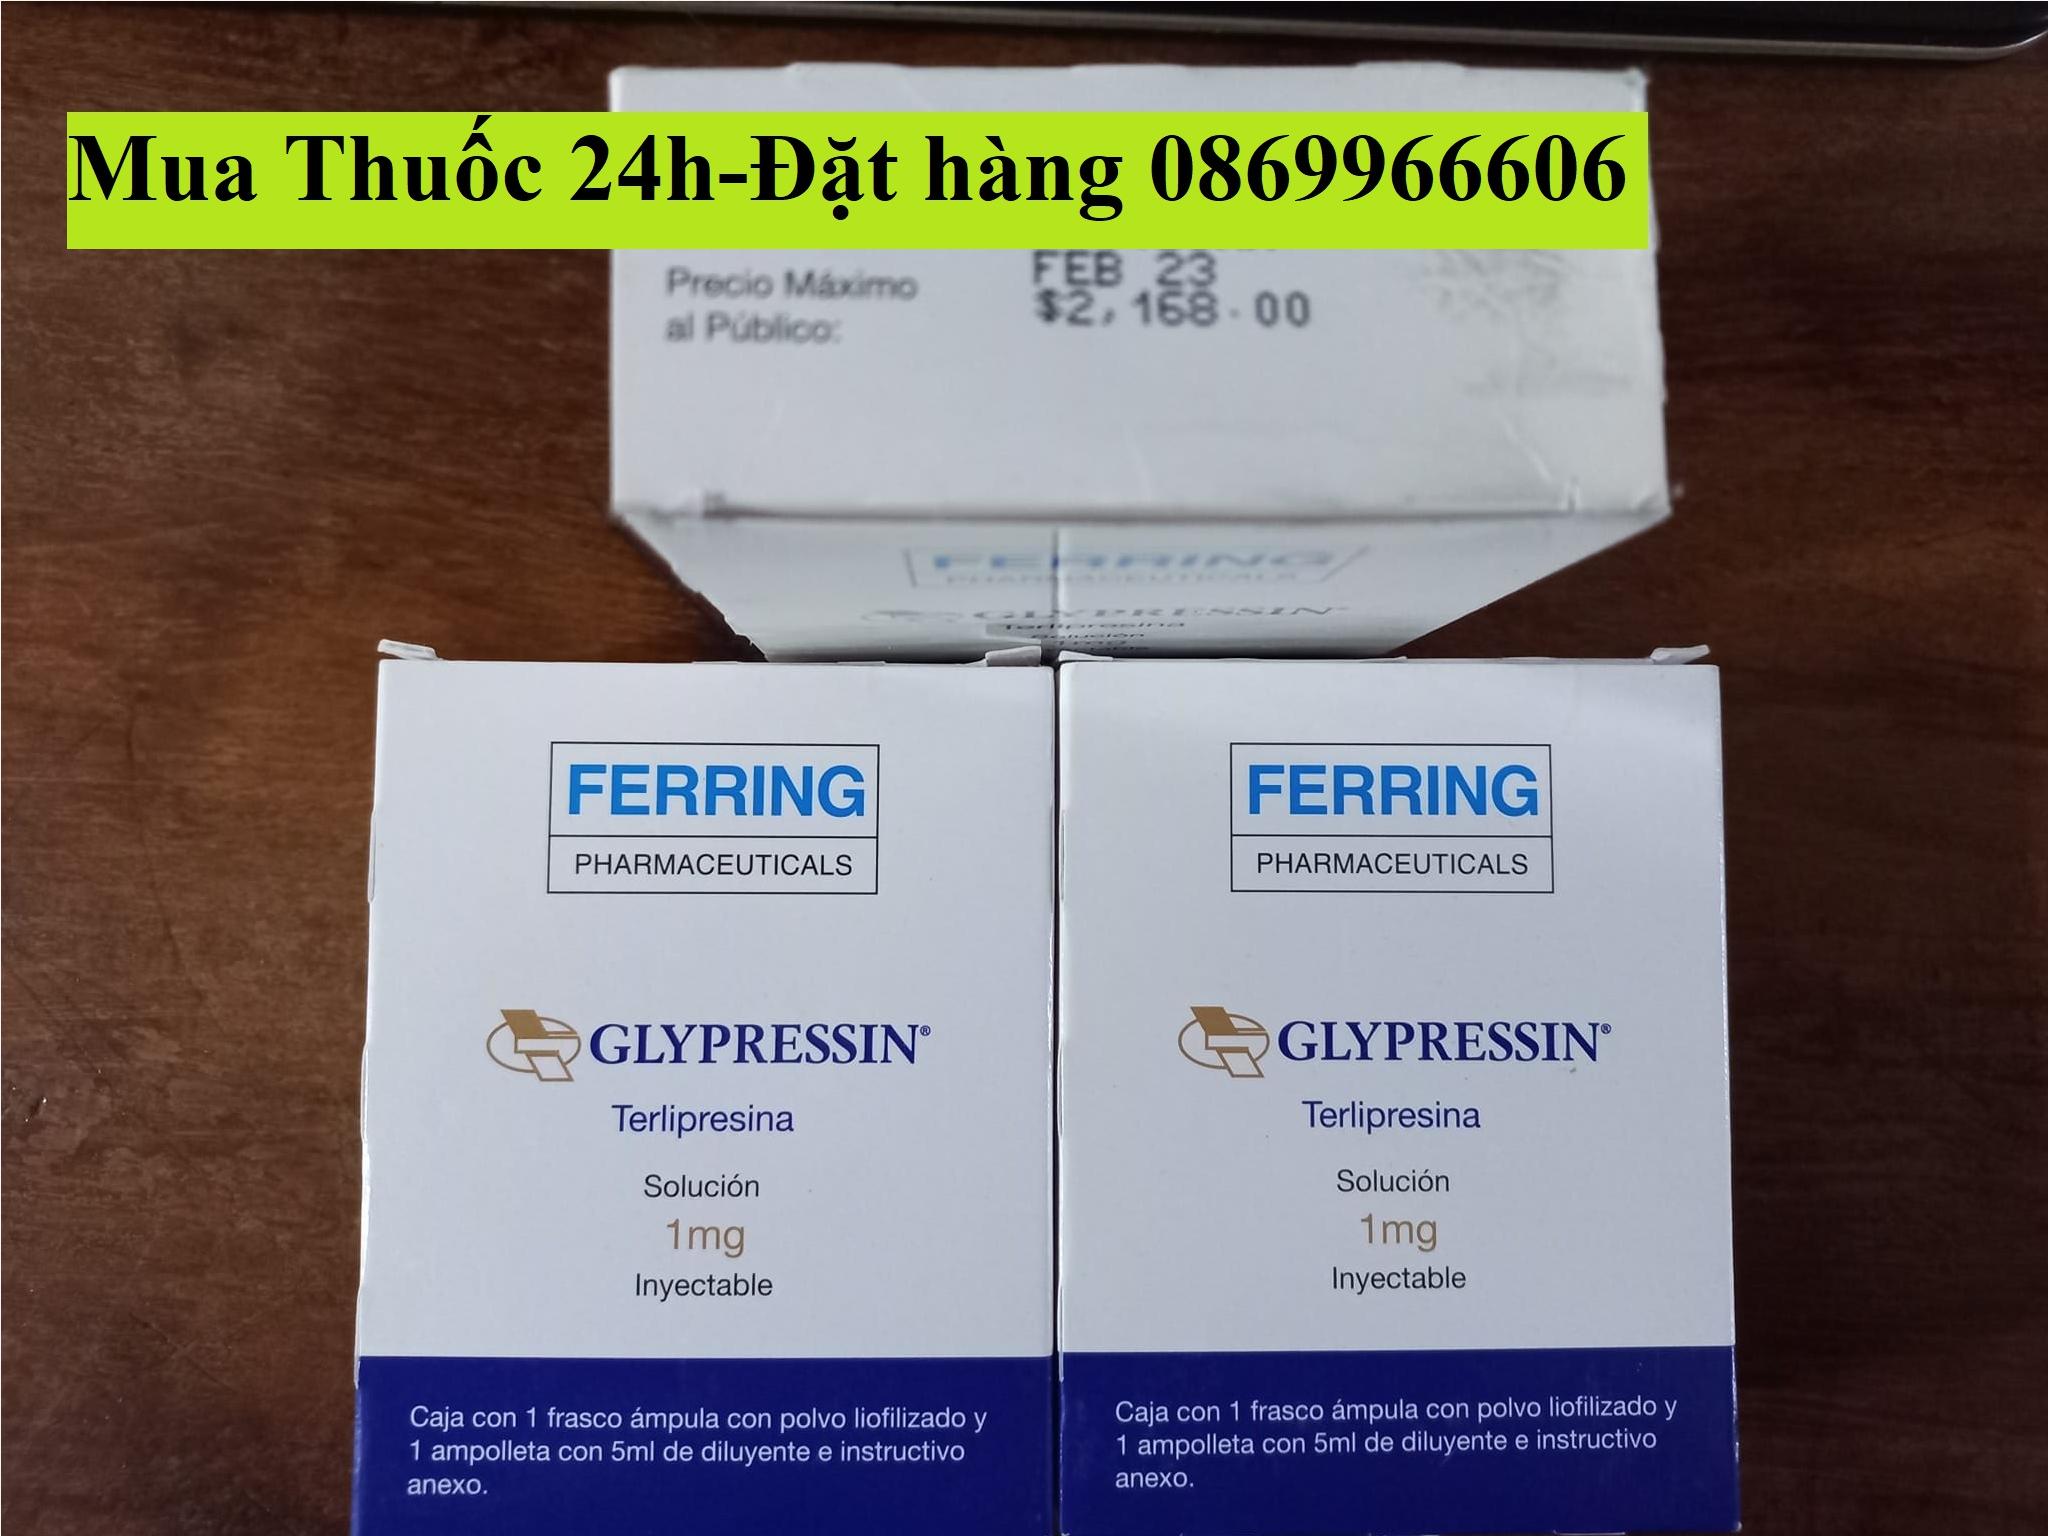 Thuốc Glypressin Terlipressin axetat giá bao nhiêu mua ở đâu?